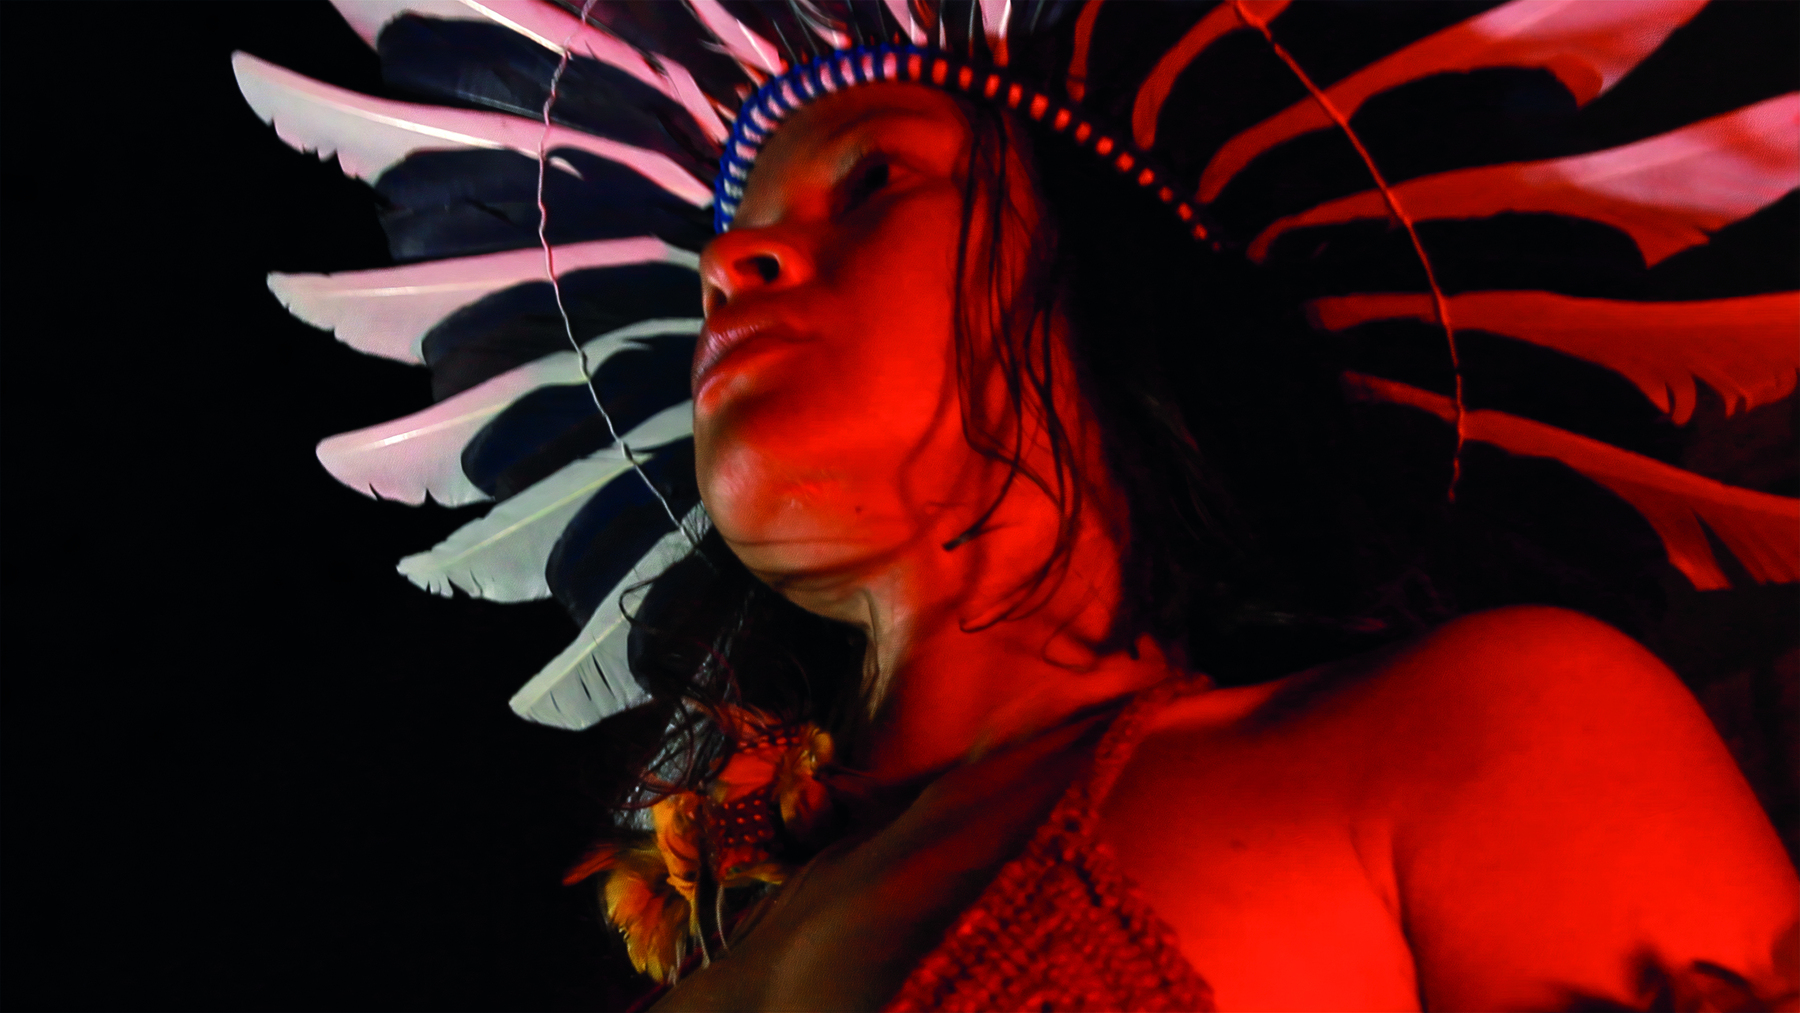 Fotografia. Destaque do rosto de uma mulher indígena com cocar de penas claras. A imagem tem tons avermelhados.